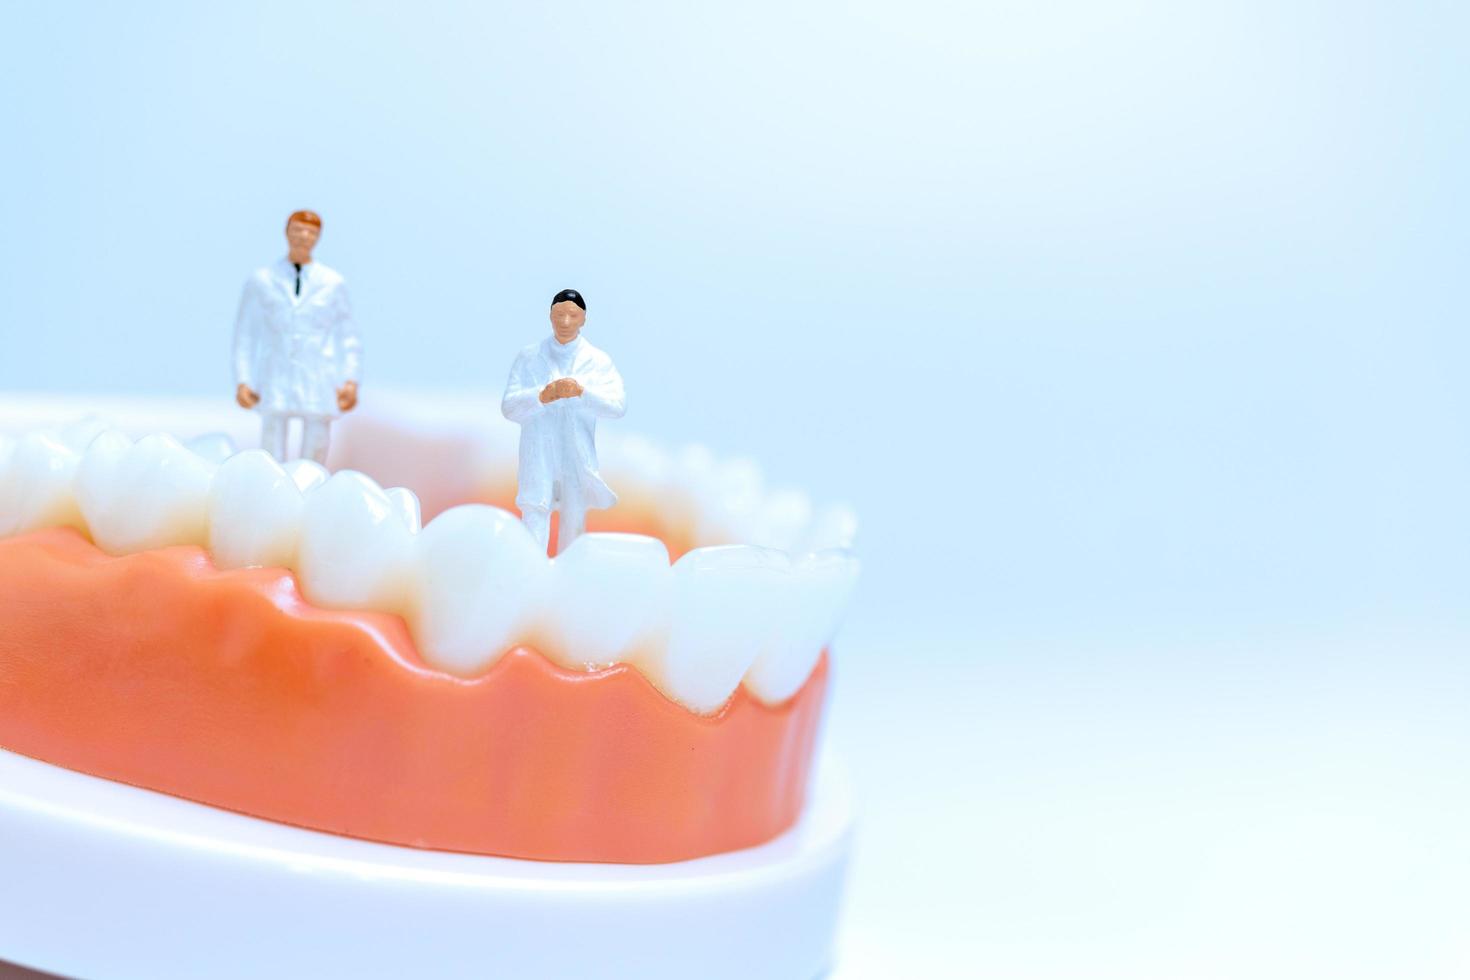 miniatuur tandartsen in menselijk tandenmodel met tandvlees foto